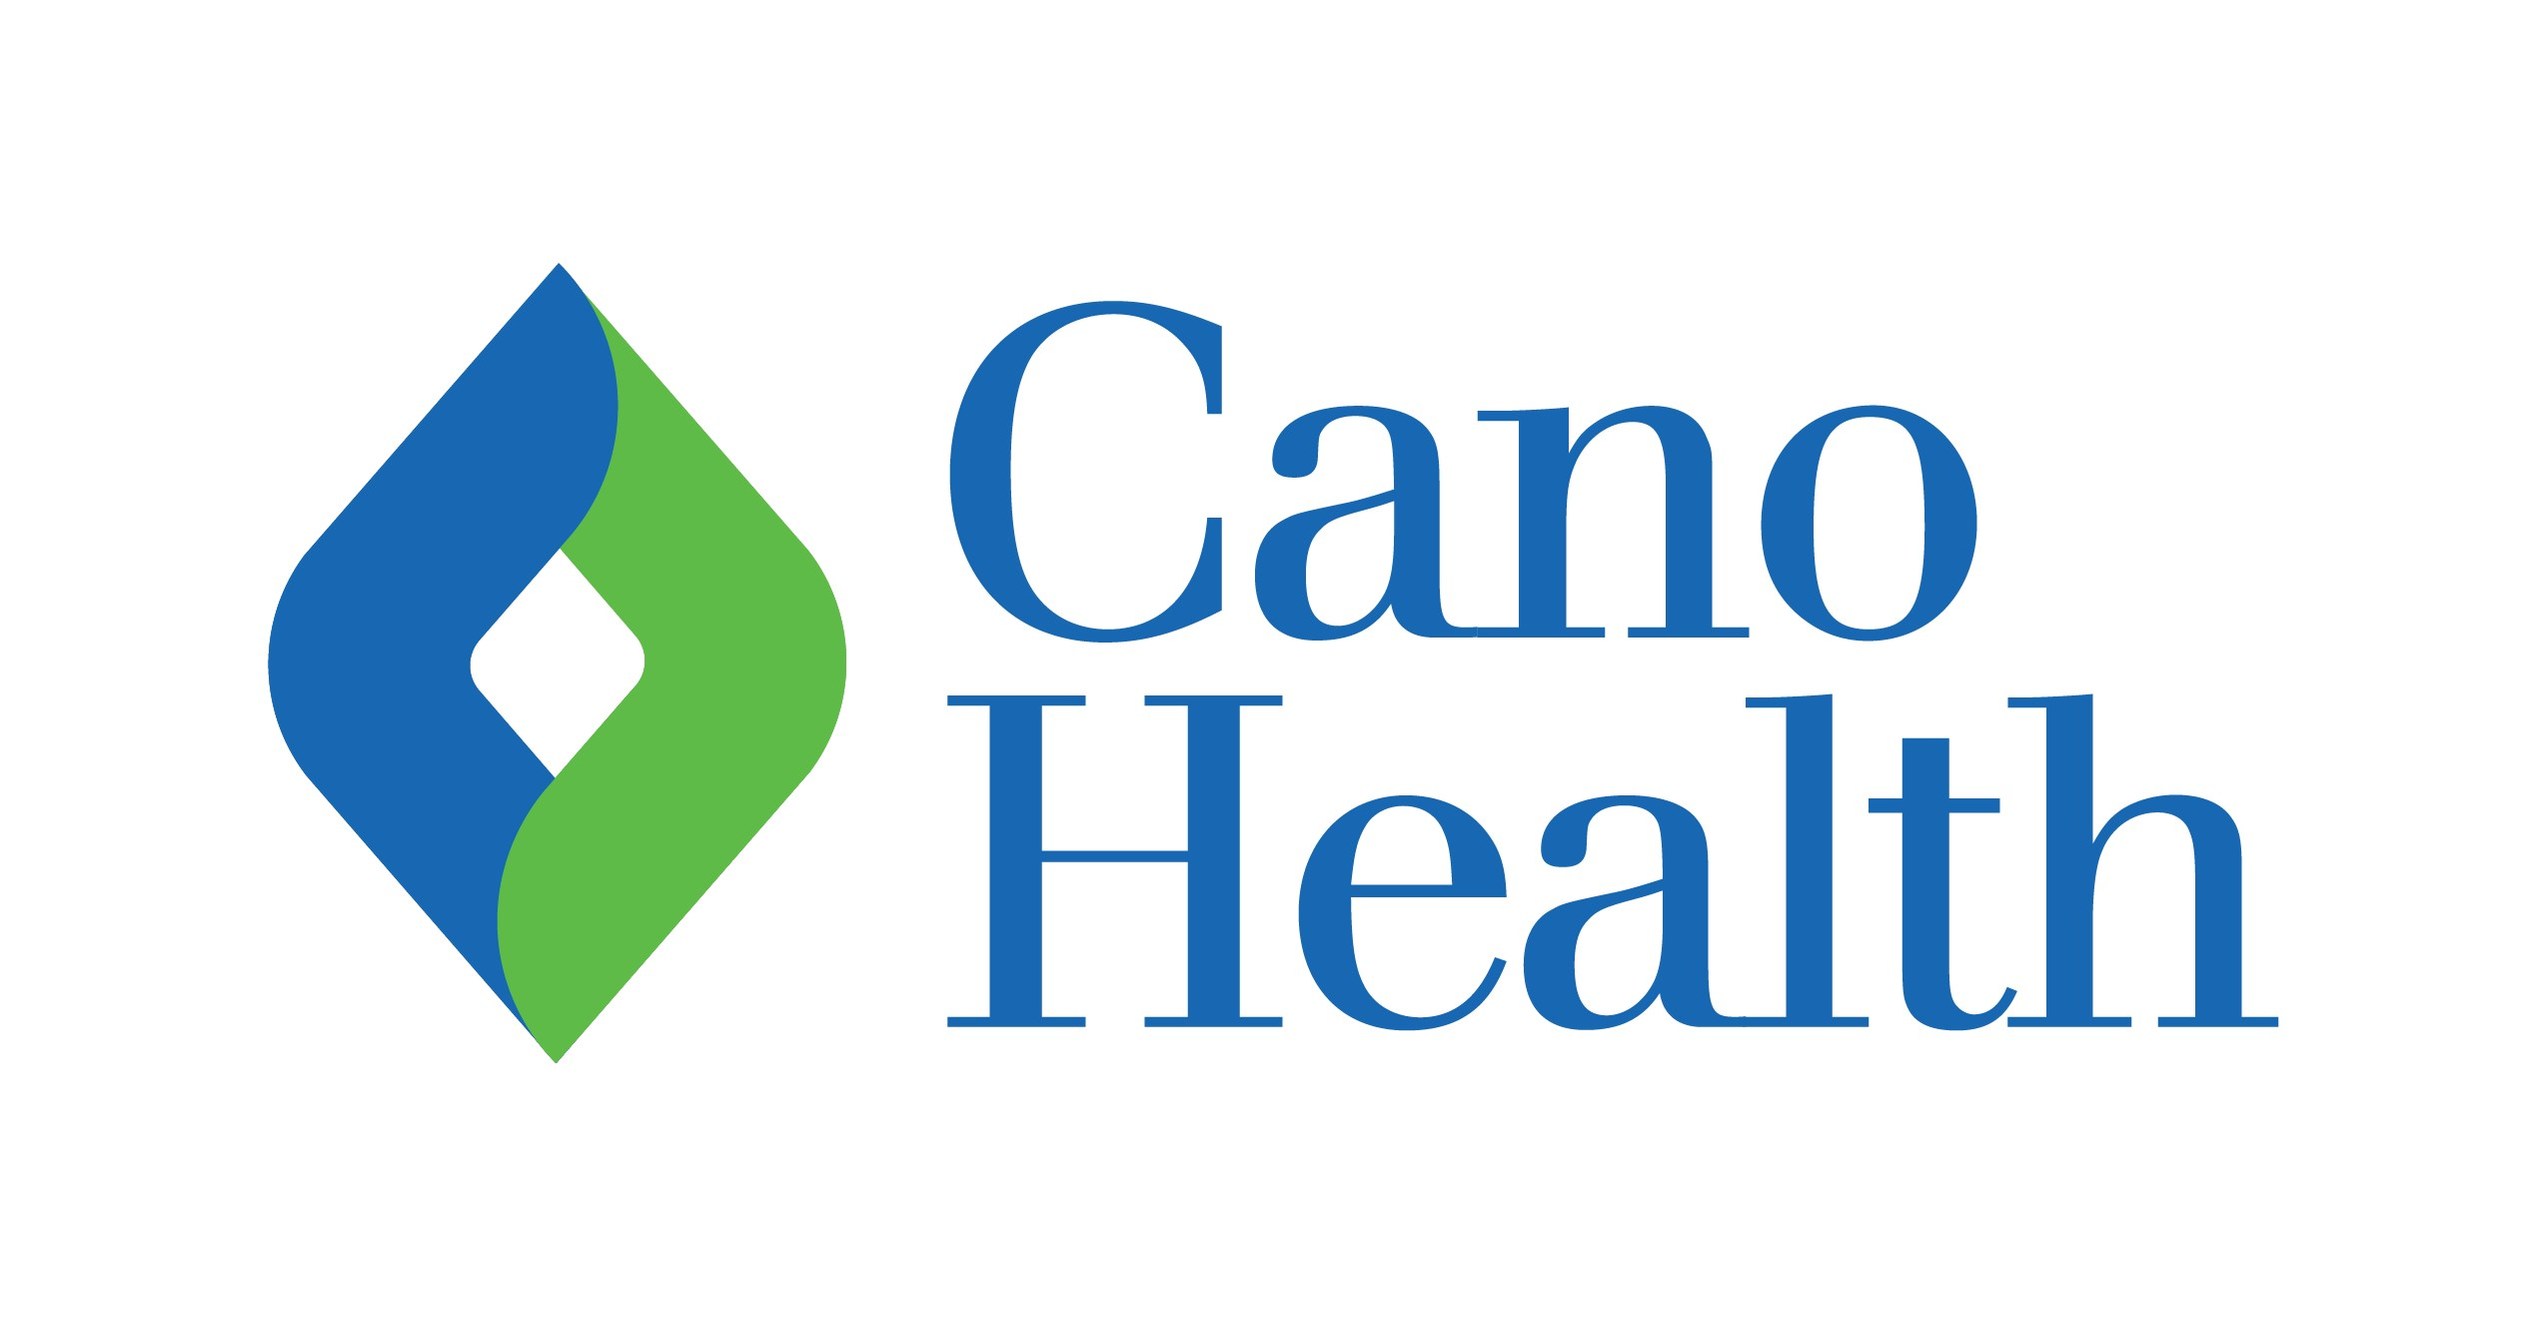 Cano Health